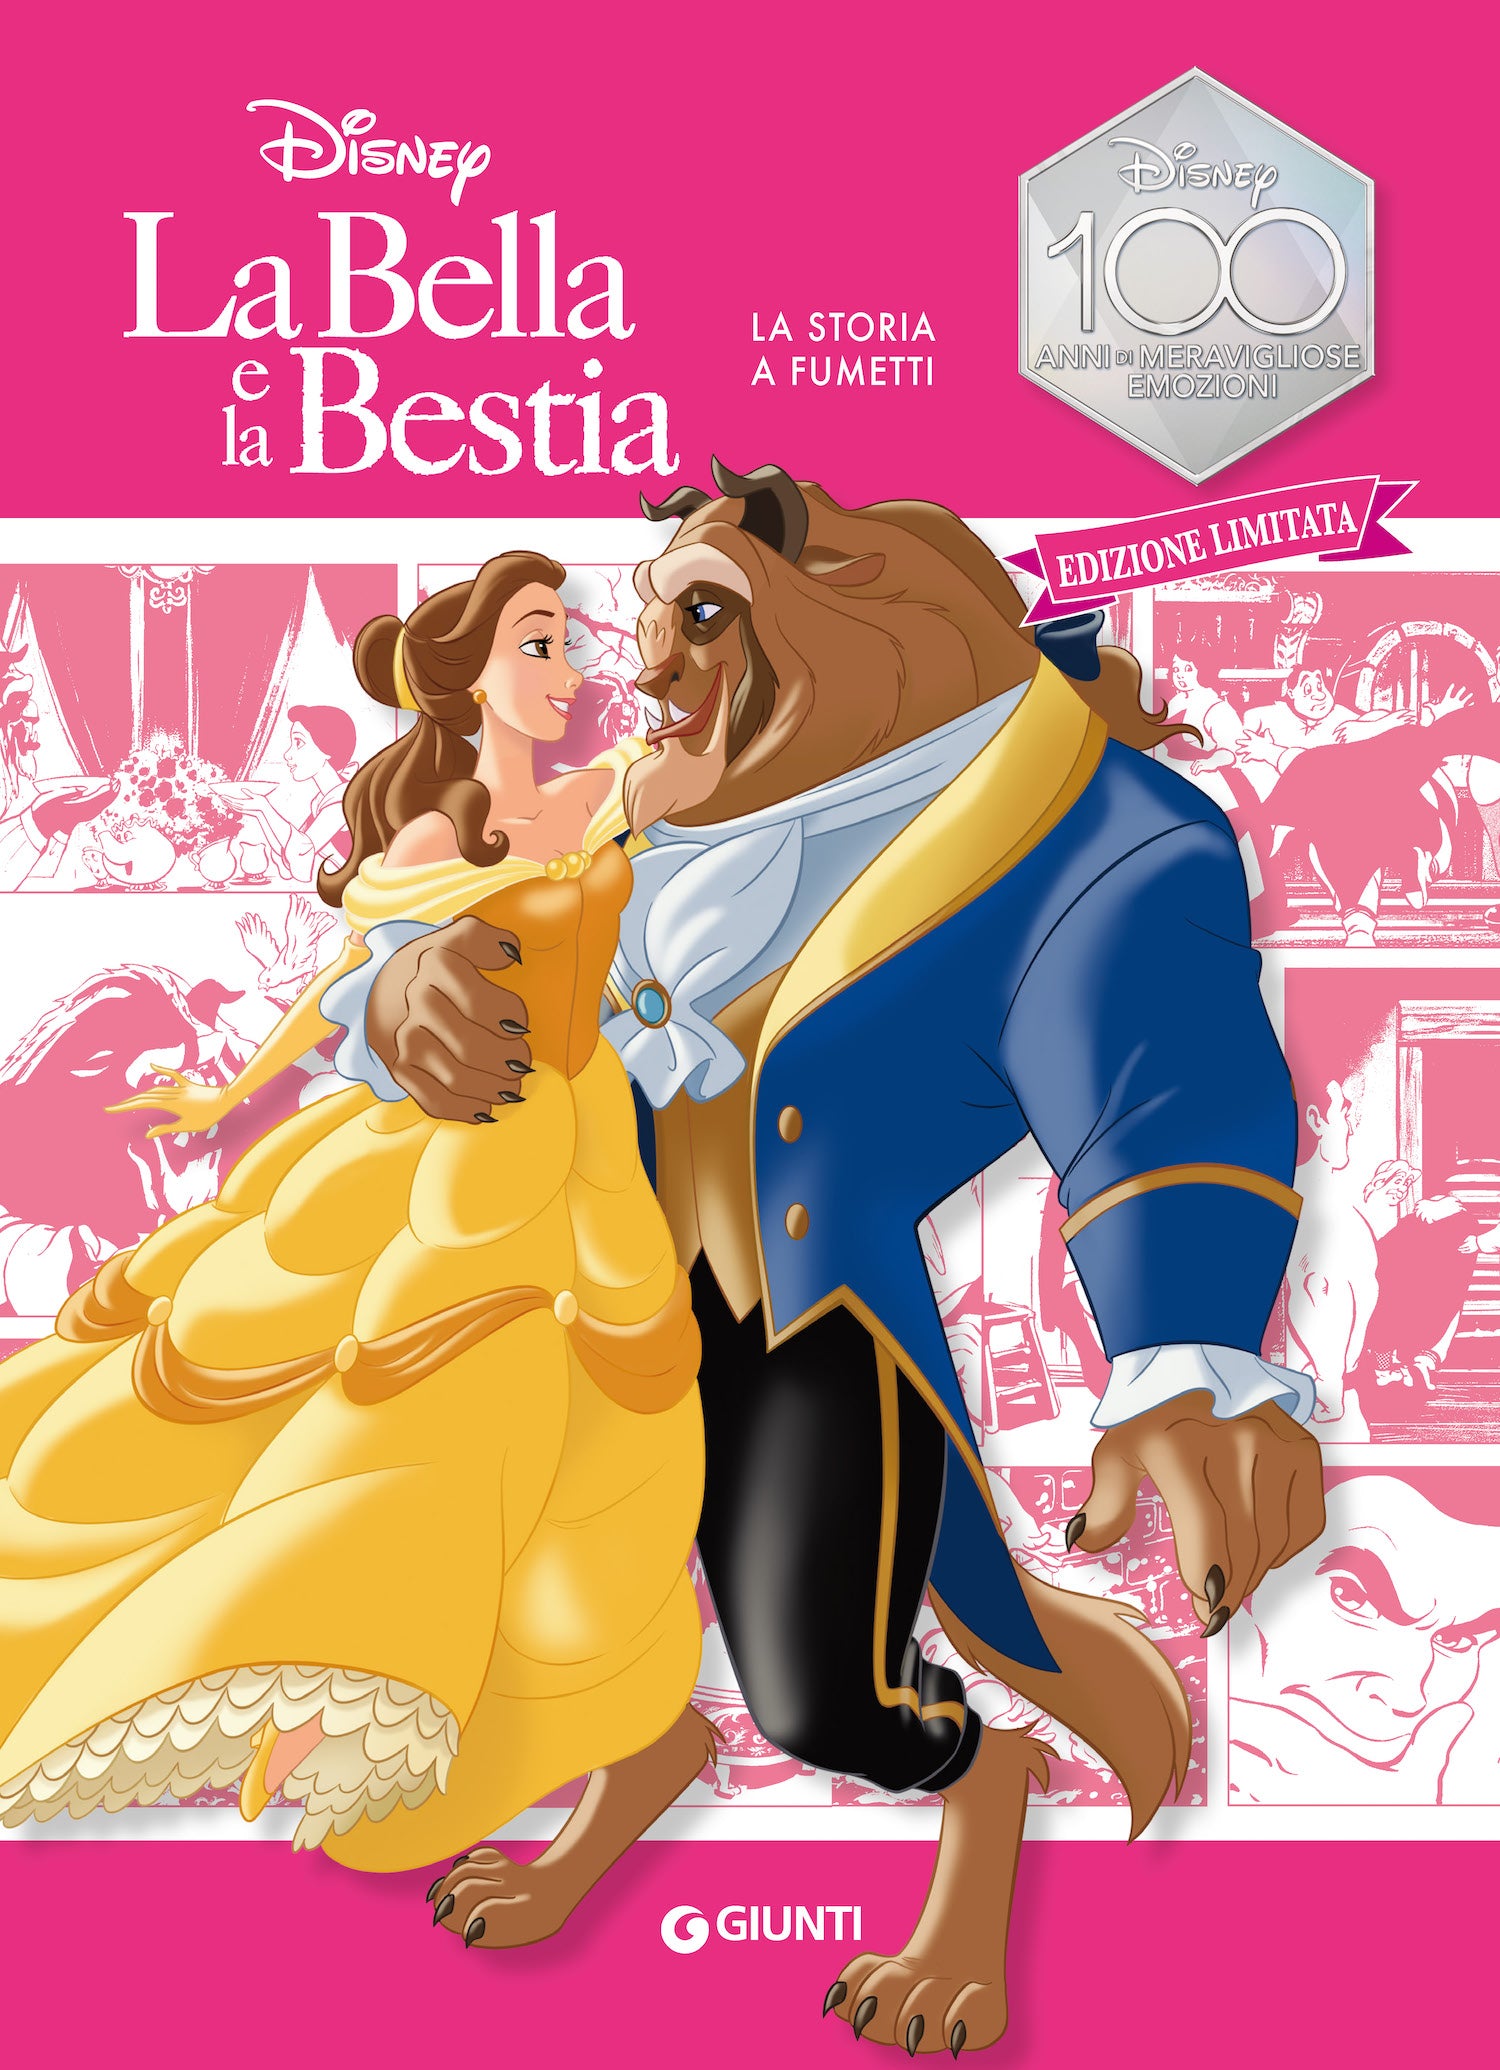 La Bella e la Bestia La storia a fumetti Edizione limitata, Walt Disney